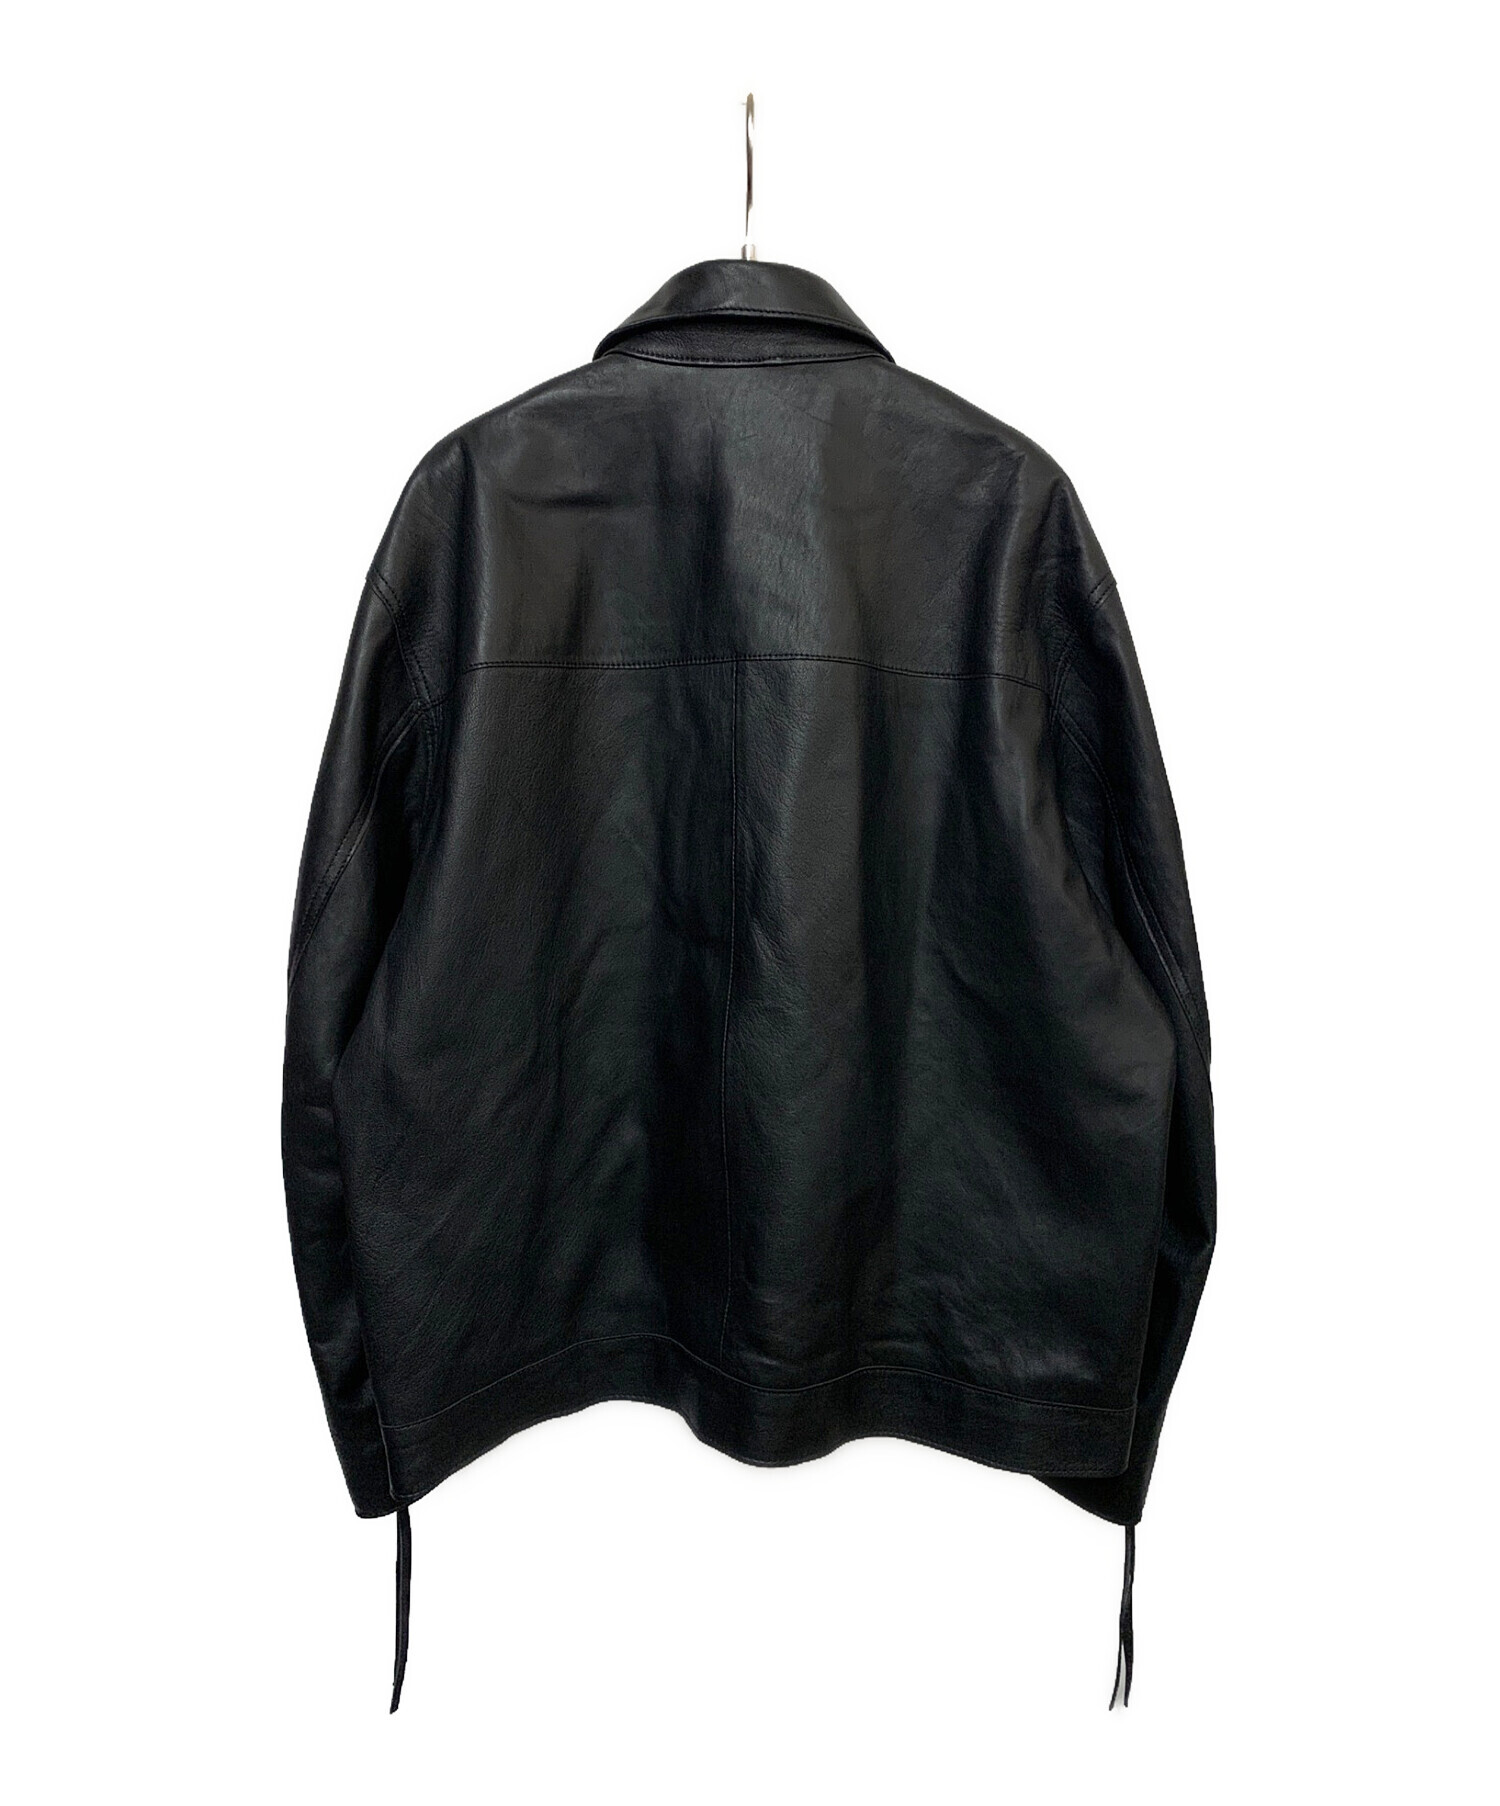 MAISON SPECIAL (メゾンスペシャル) ラムレザープライムオーバー襟付きシングルライダースジャケット ブラック